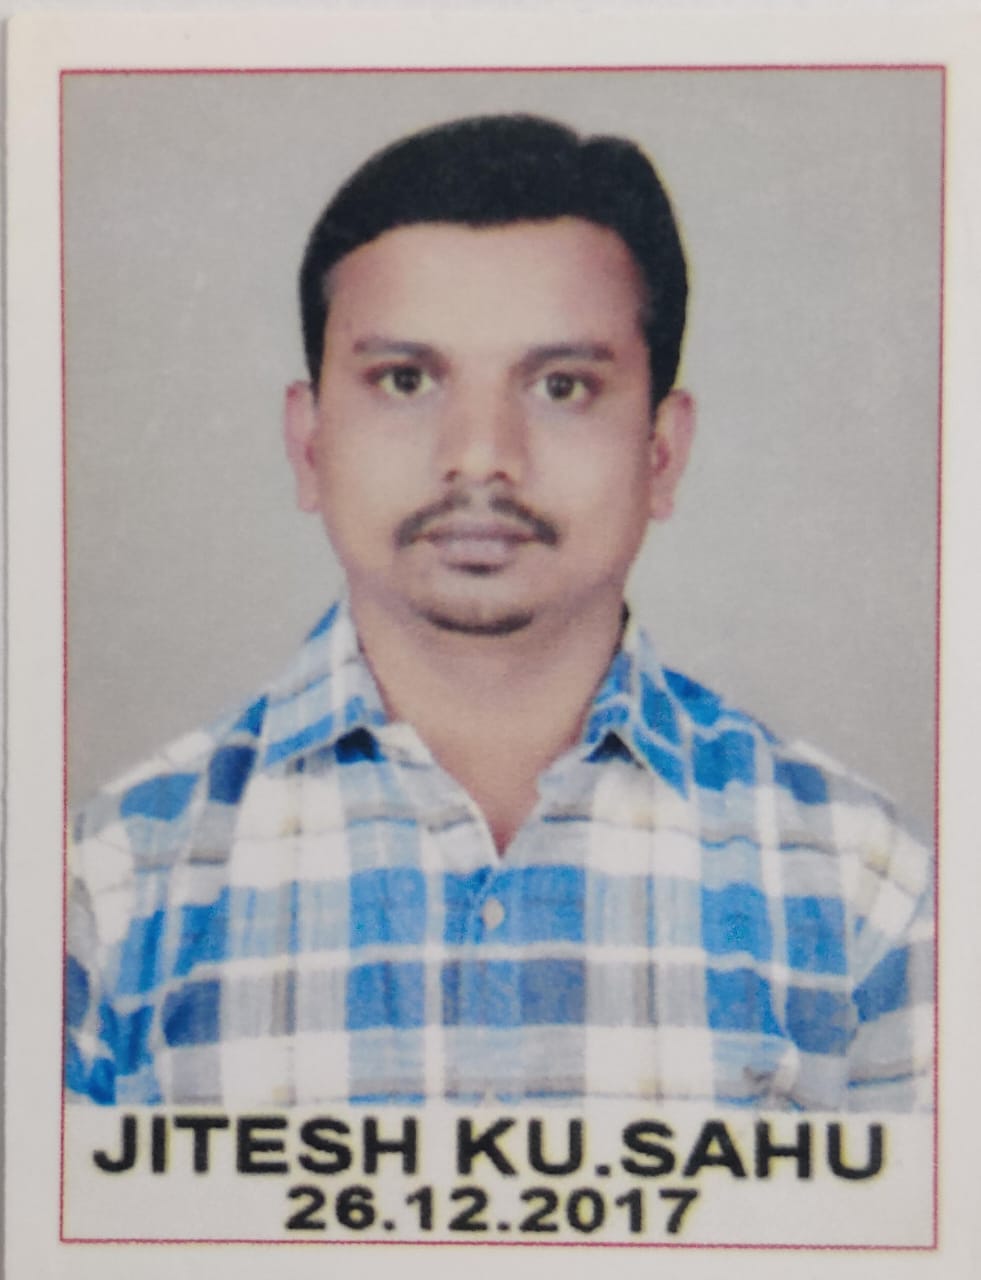 Mr. Jitesh Kumar Sahu